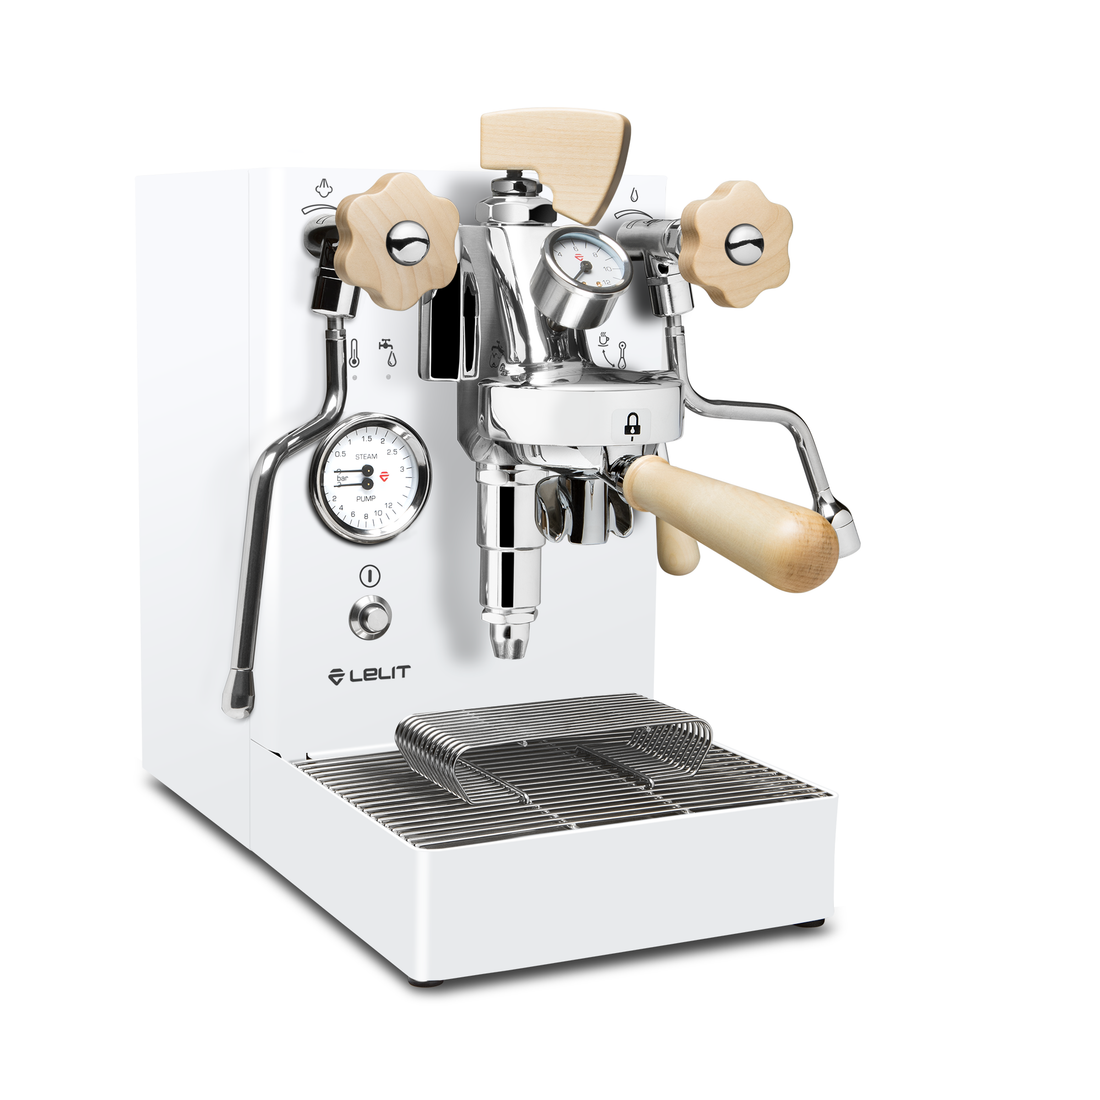 Lelit Mara X Heat Exchanger Espresso Machine - Matte White